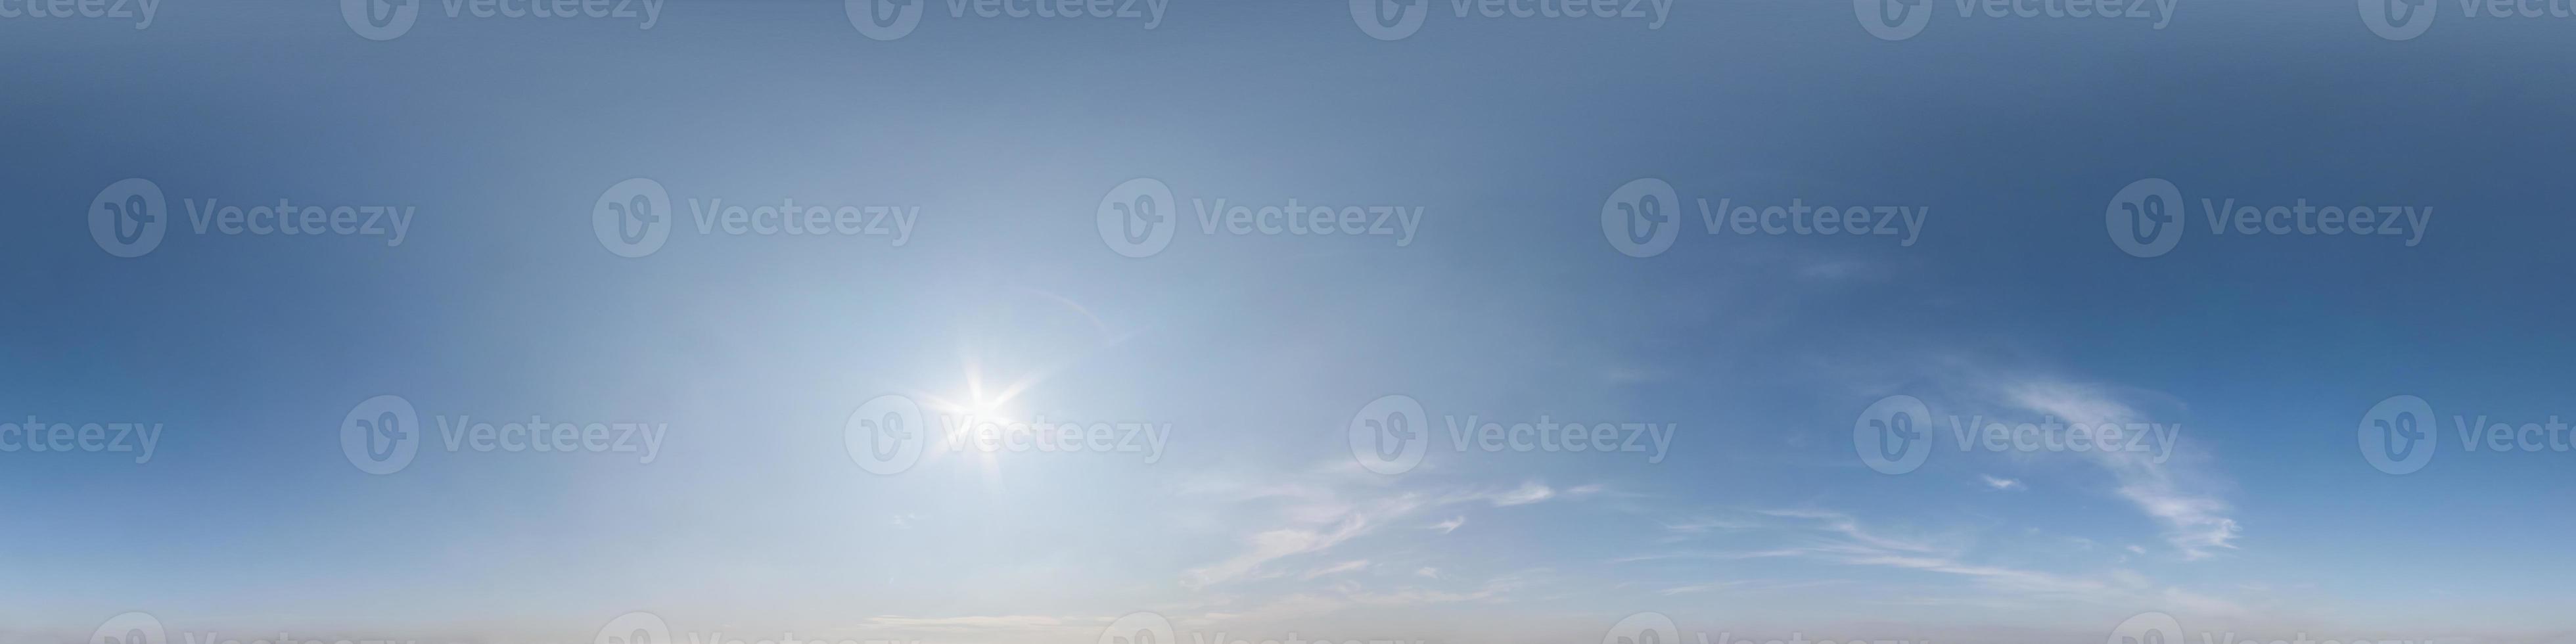 cielo azul claro con hermosas nubes blancas. vista de ángulo de 360 grados panorámica hdri perfecta con cenit para usar en gráficos 3d o desarrollo de juegos como cúpula del cielo o editar toma de drones foto